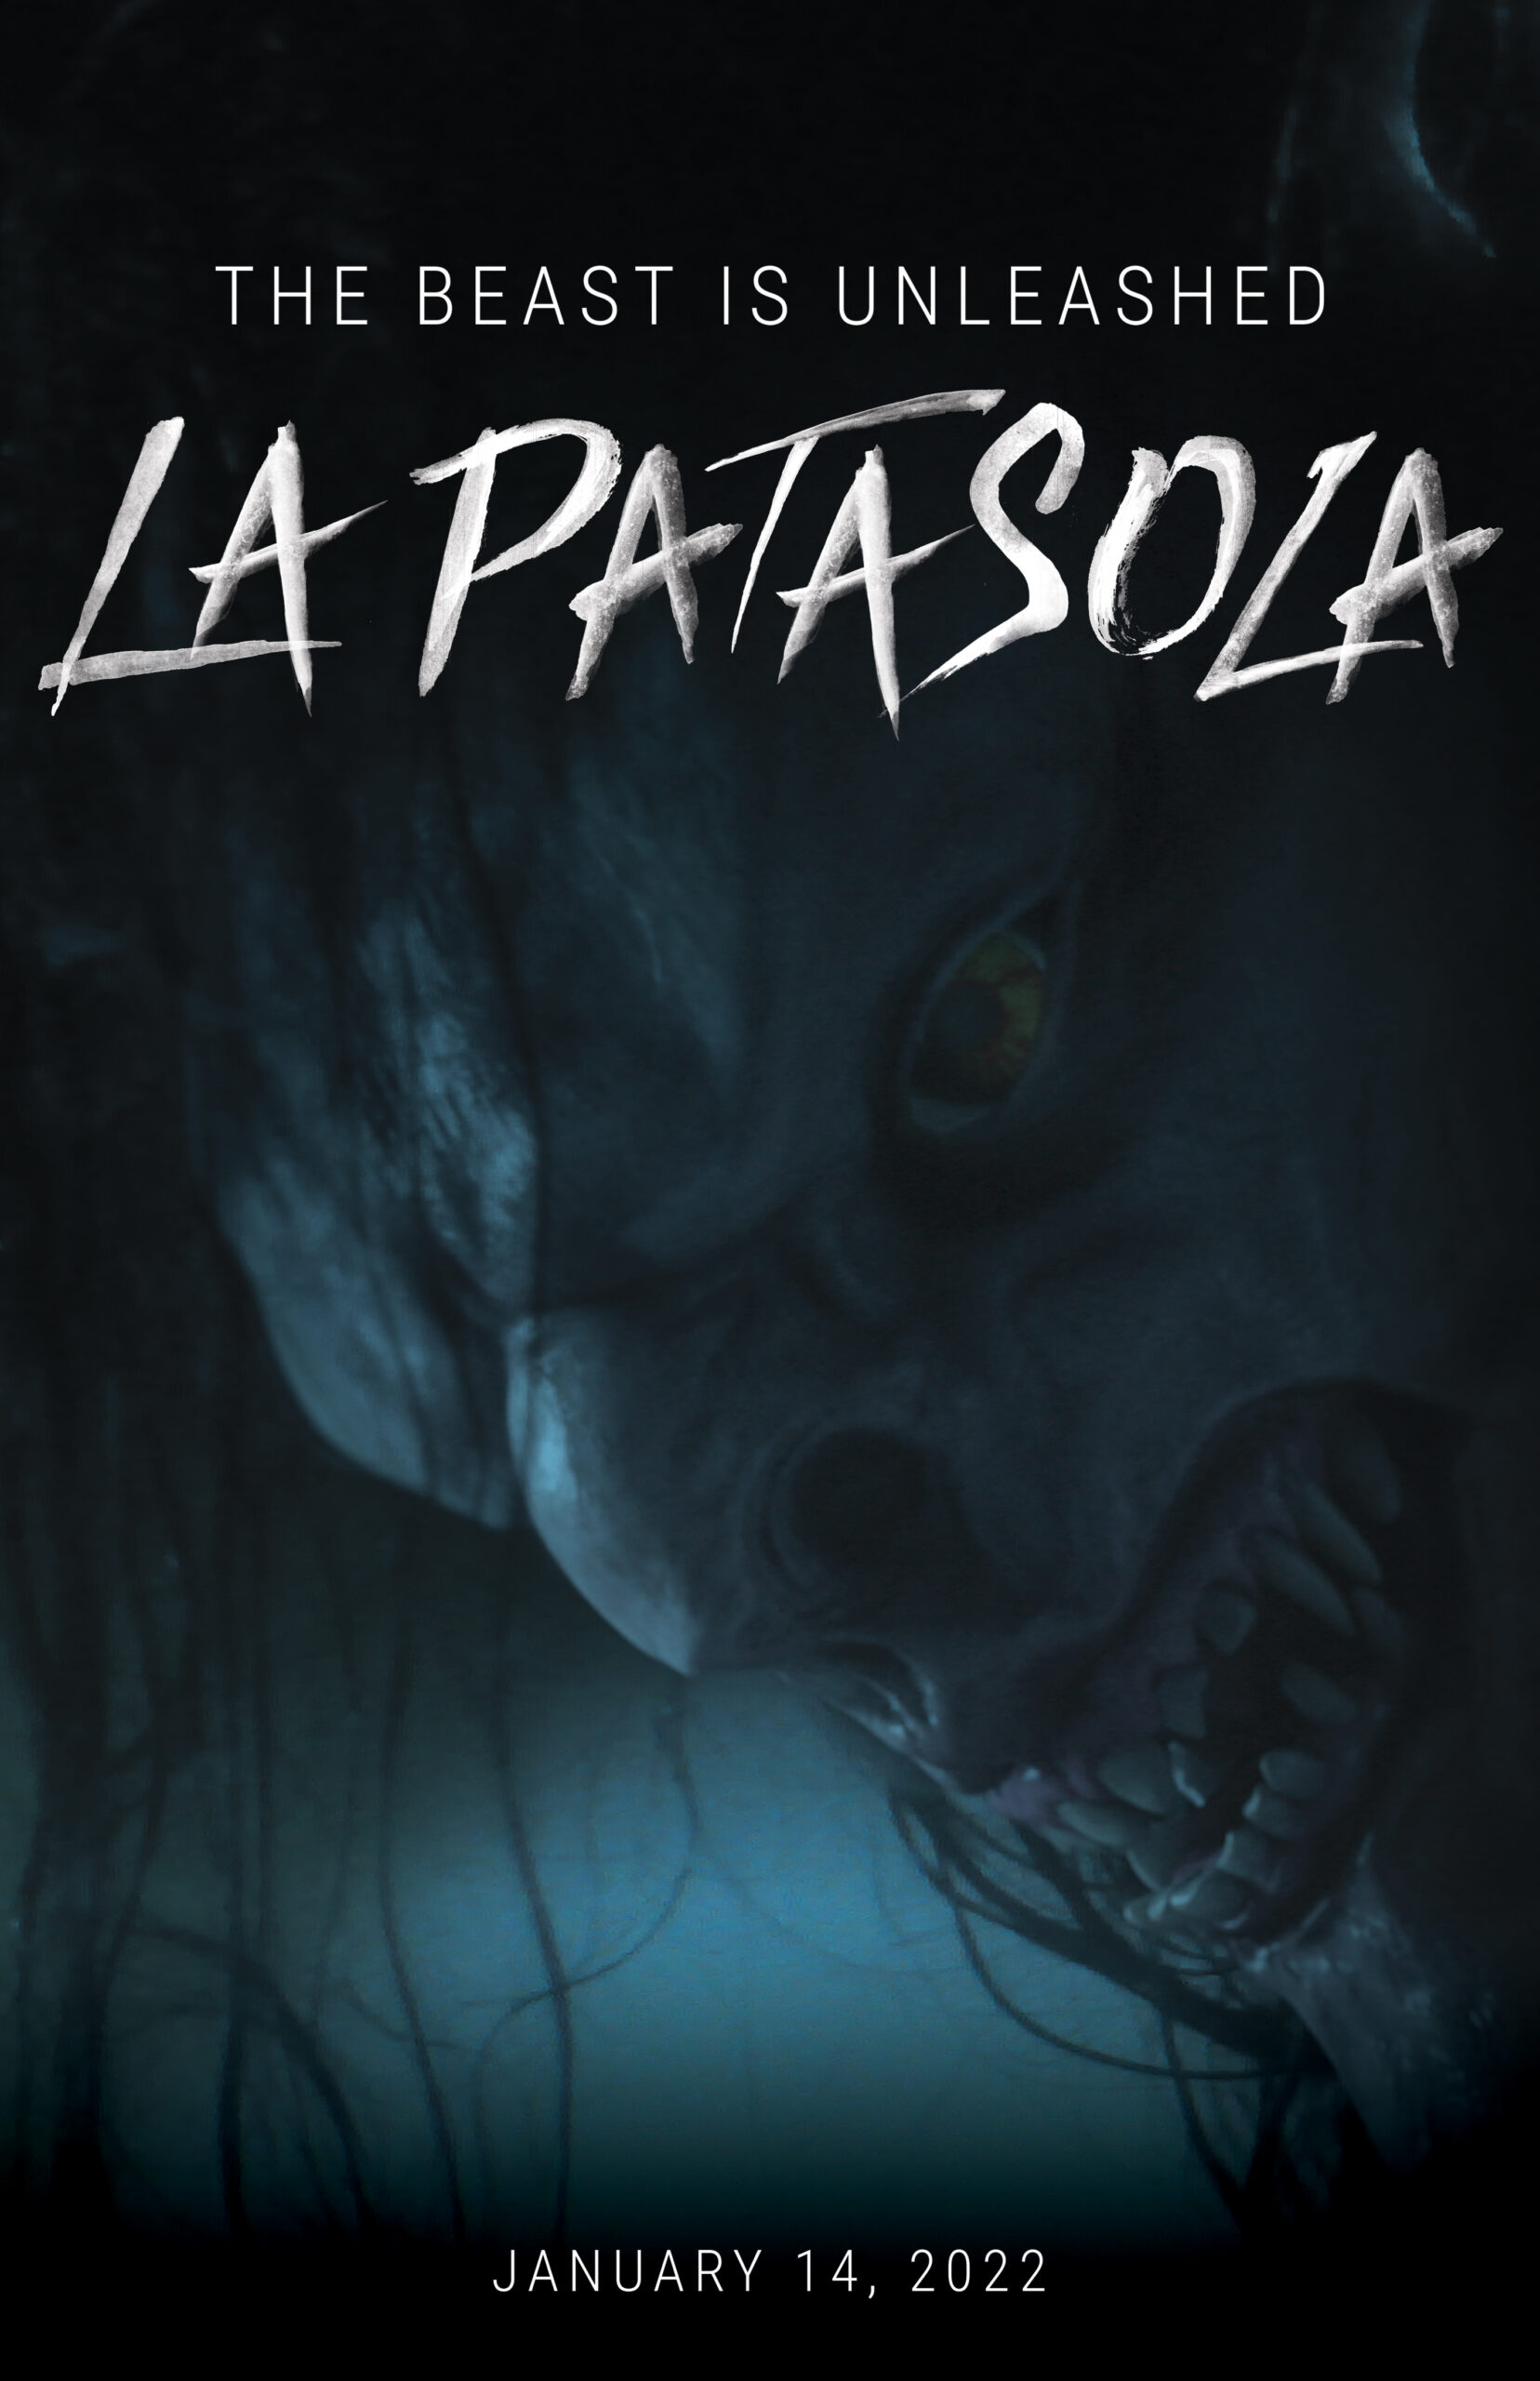 ดูหนังออนไลน์ฟรี The Curse of La Patasola (2022) คำสาปแห่งลาปาตาโซลา